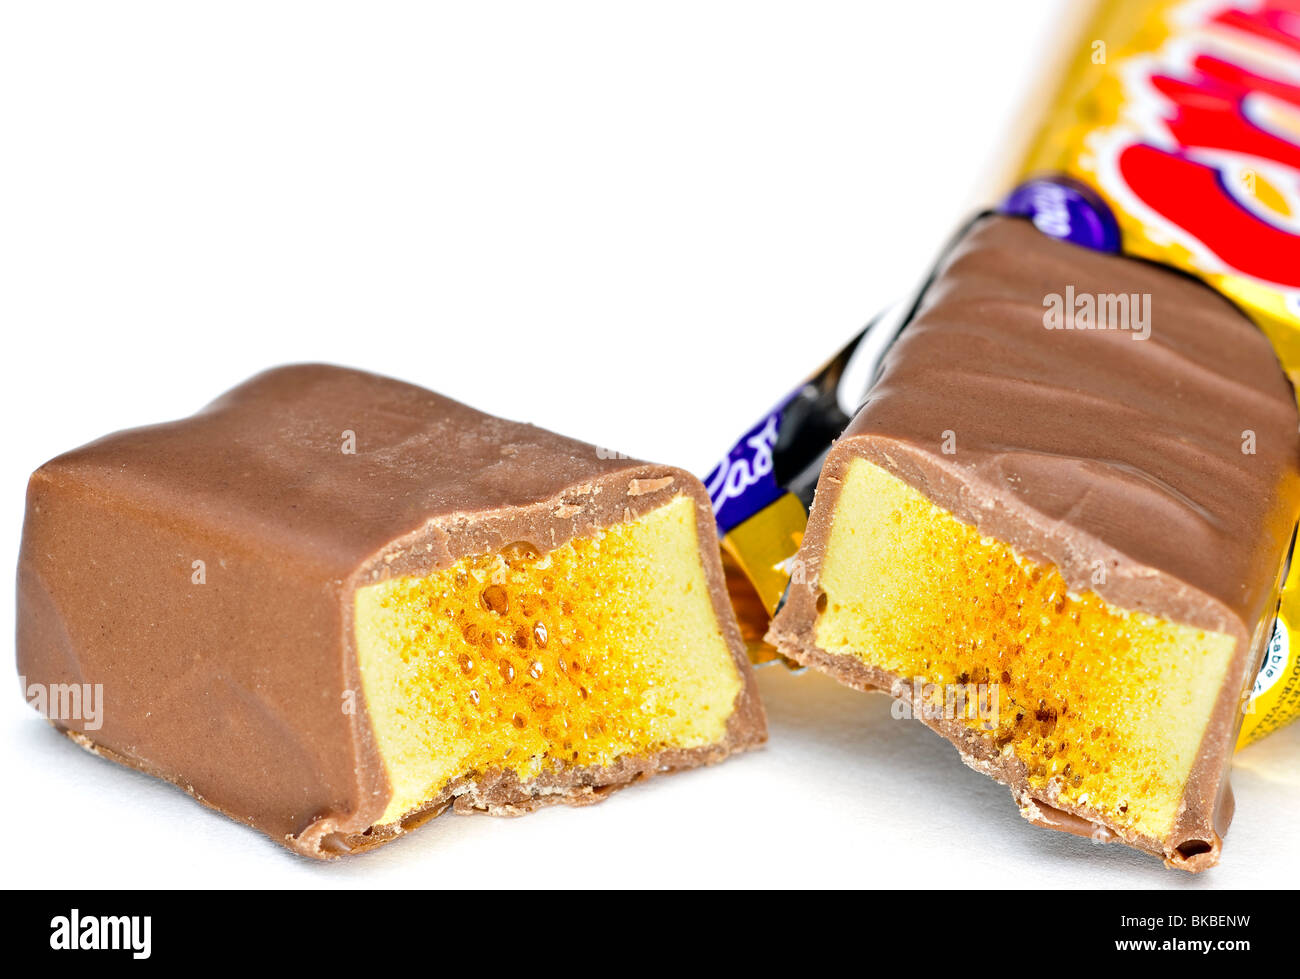 Cadbury Crunchie bar split into two Stock Photo